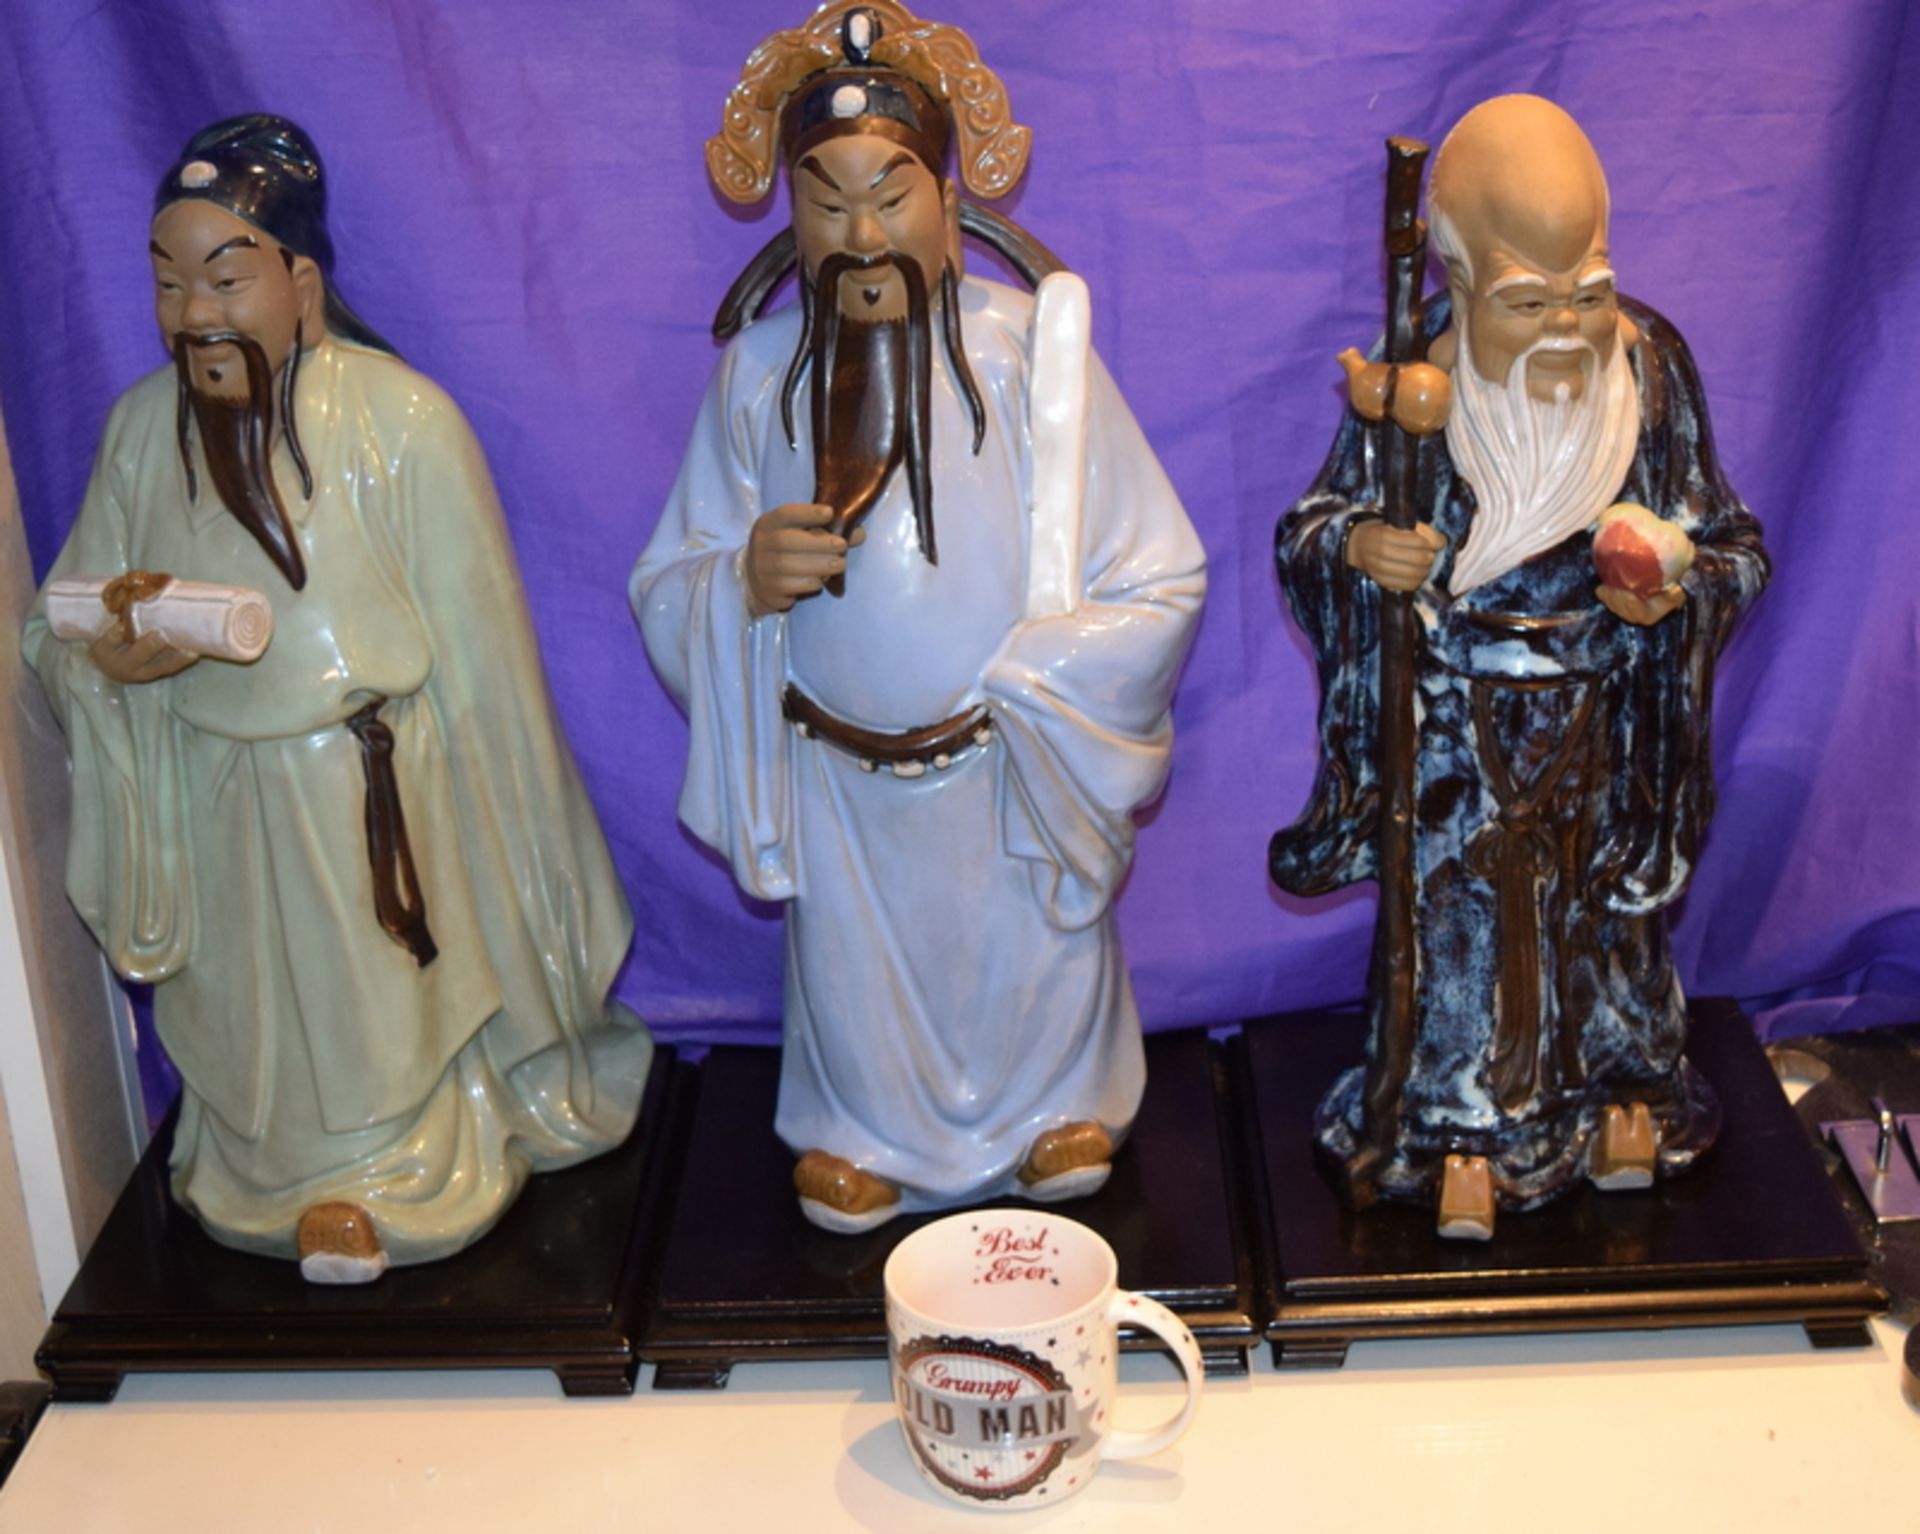 3 Chinese Porcelain Glazed Terracotta Deity Figures - Image 2 of 5